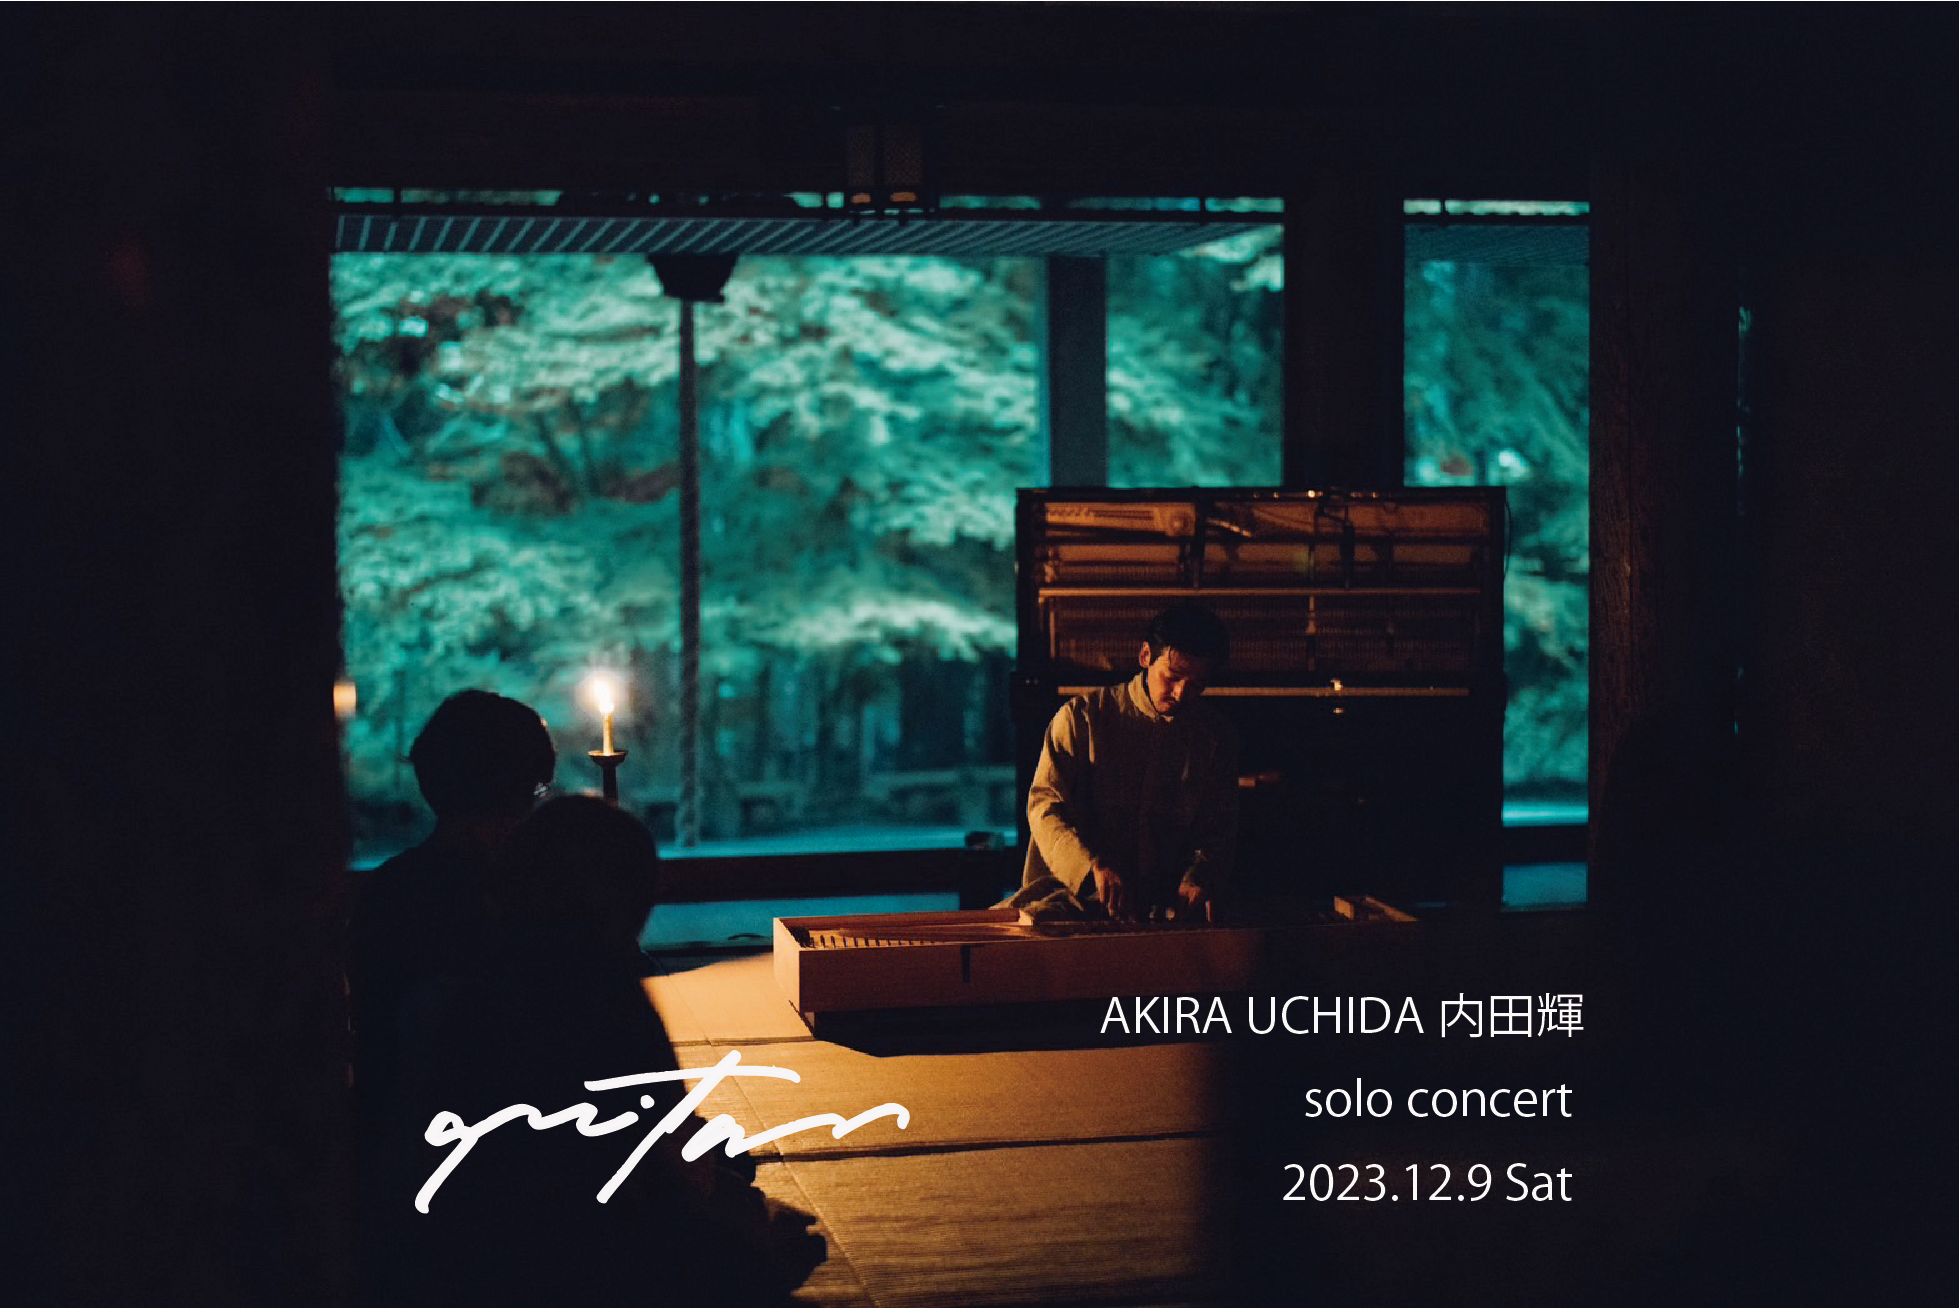 AKIRA UCHIDA solo concert Dec. 9, 2023